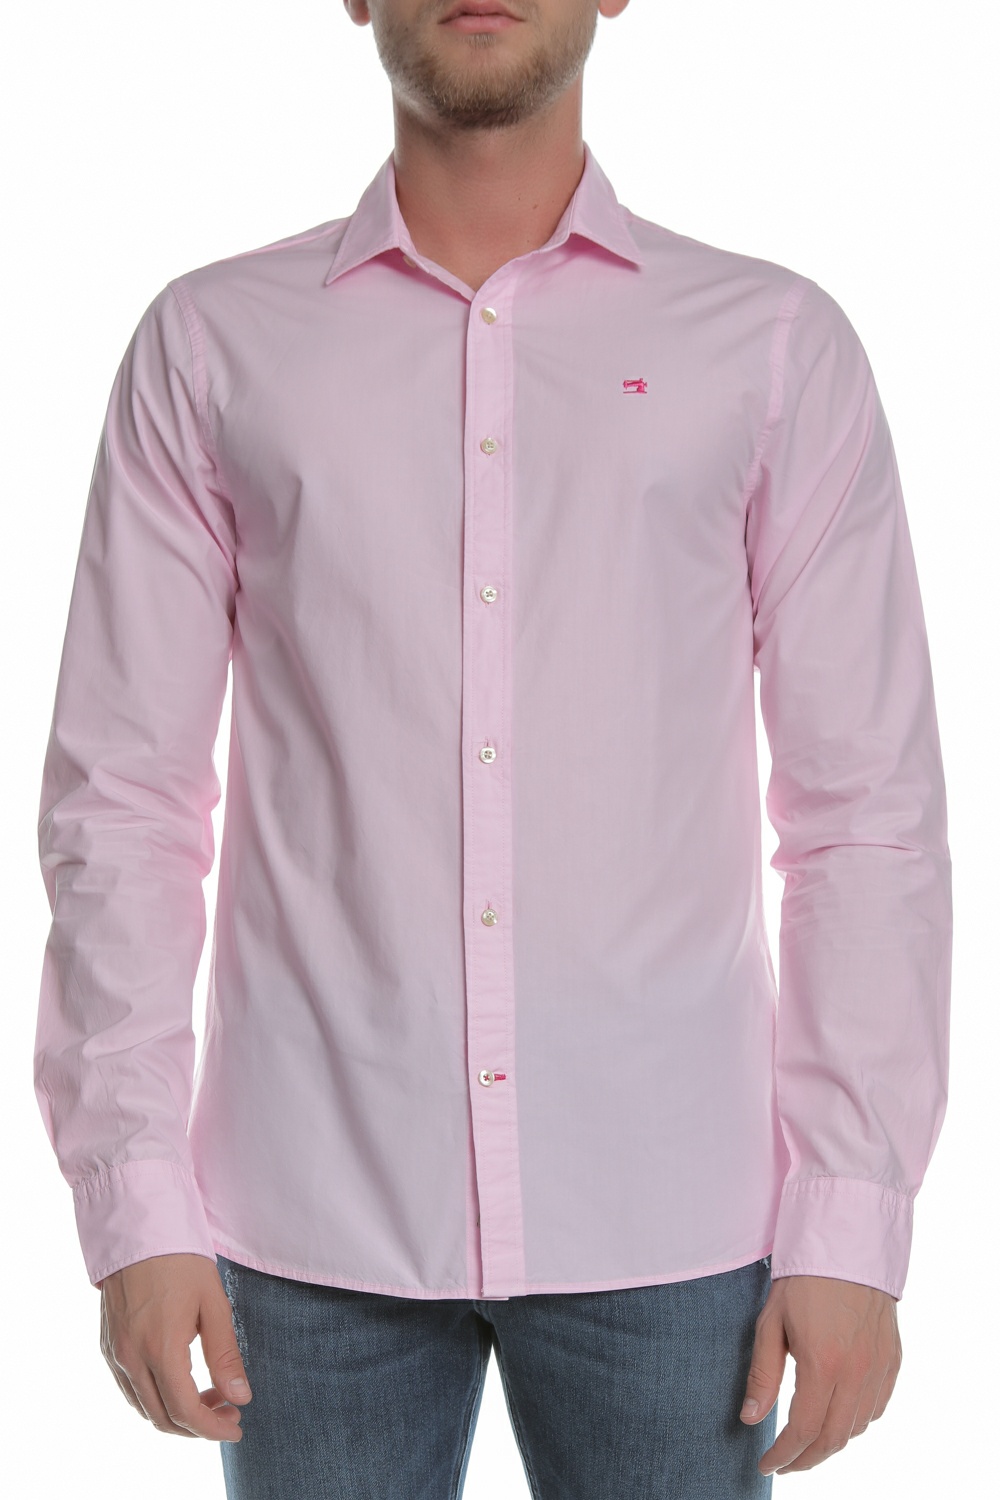 Ανδρικά/Ρούχα/Πουκάμισα/Μακρυμάνικα SCOTCH & SODA - Ανδρικό πουκάμισο SCOTCH & SODA ροζ